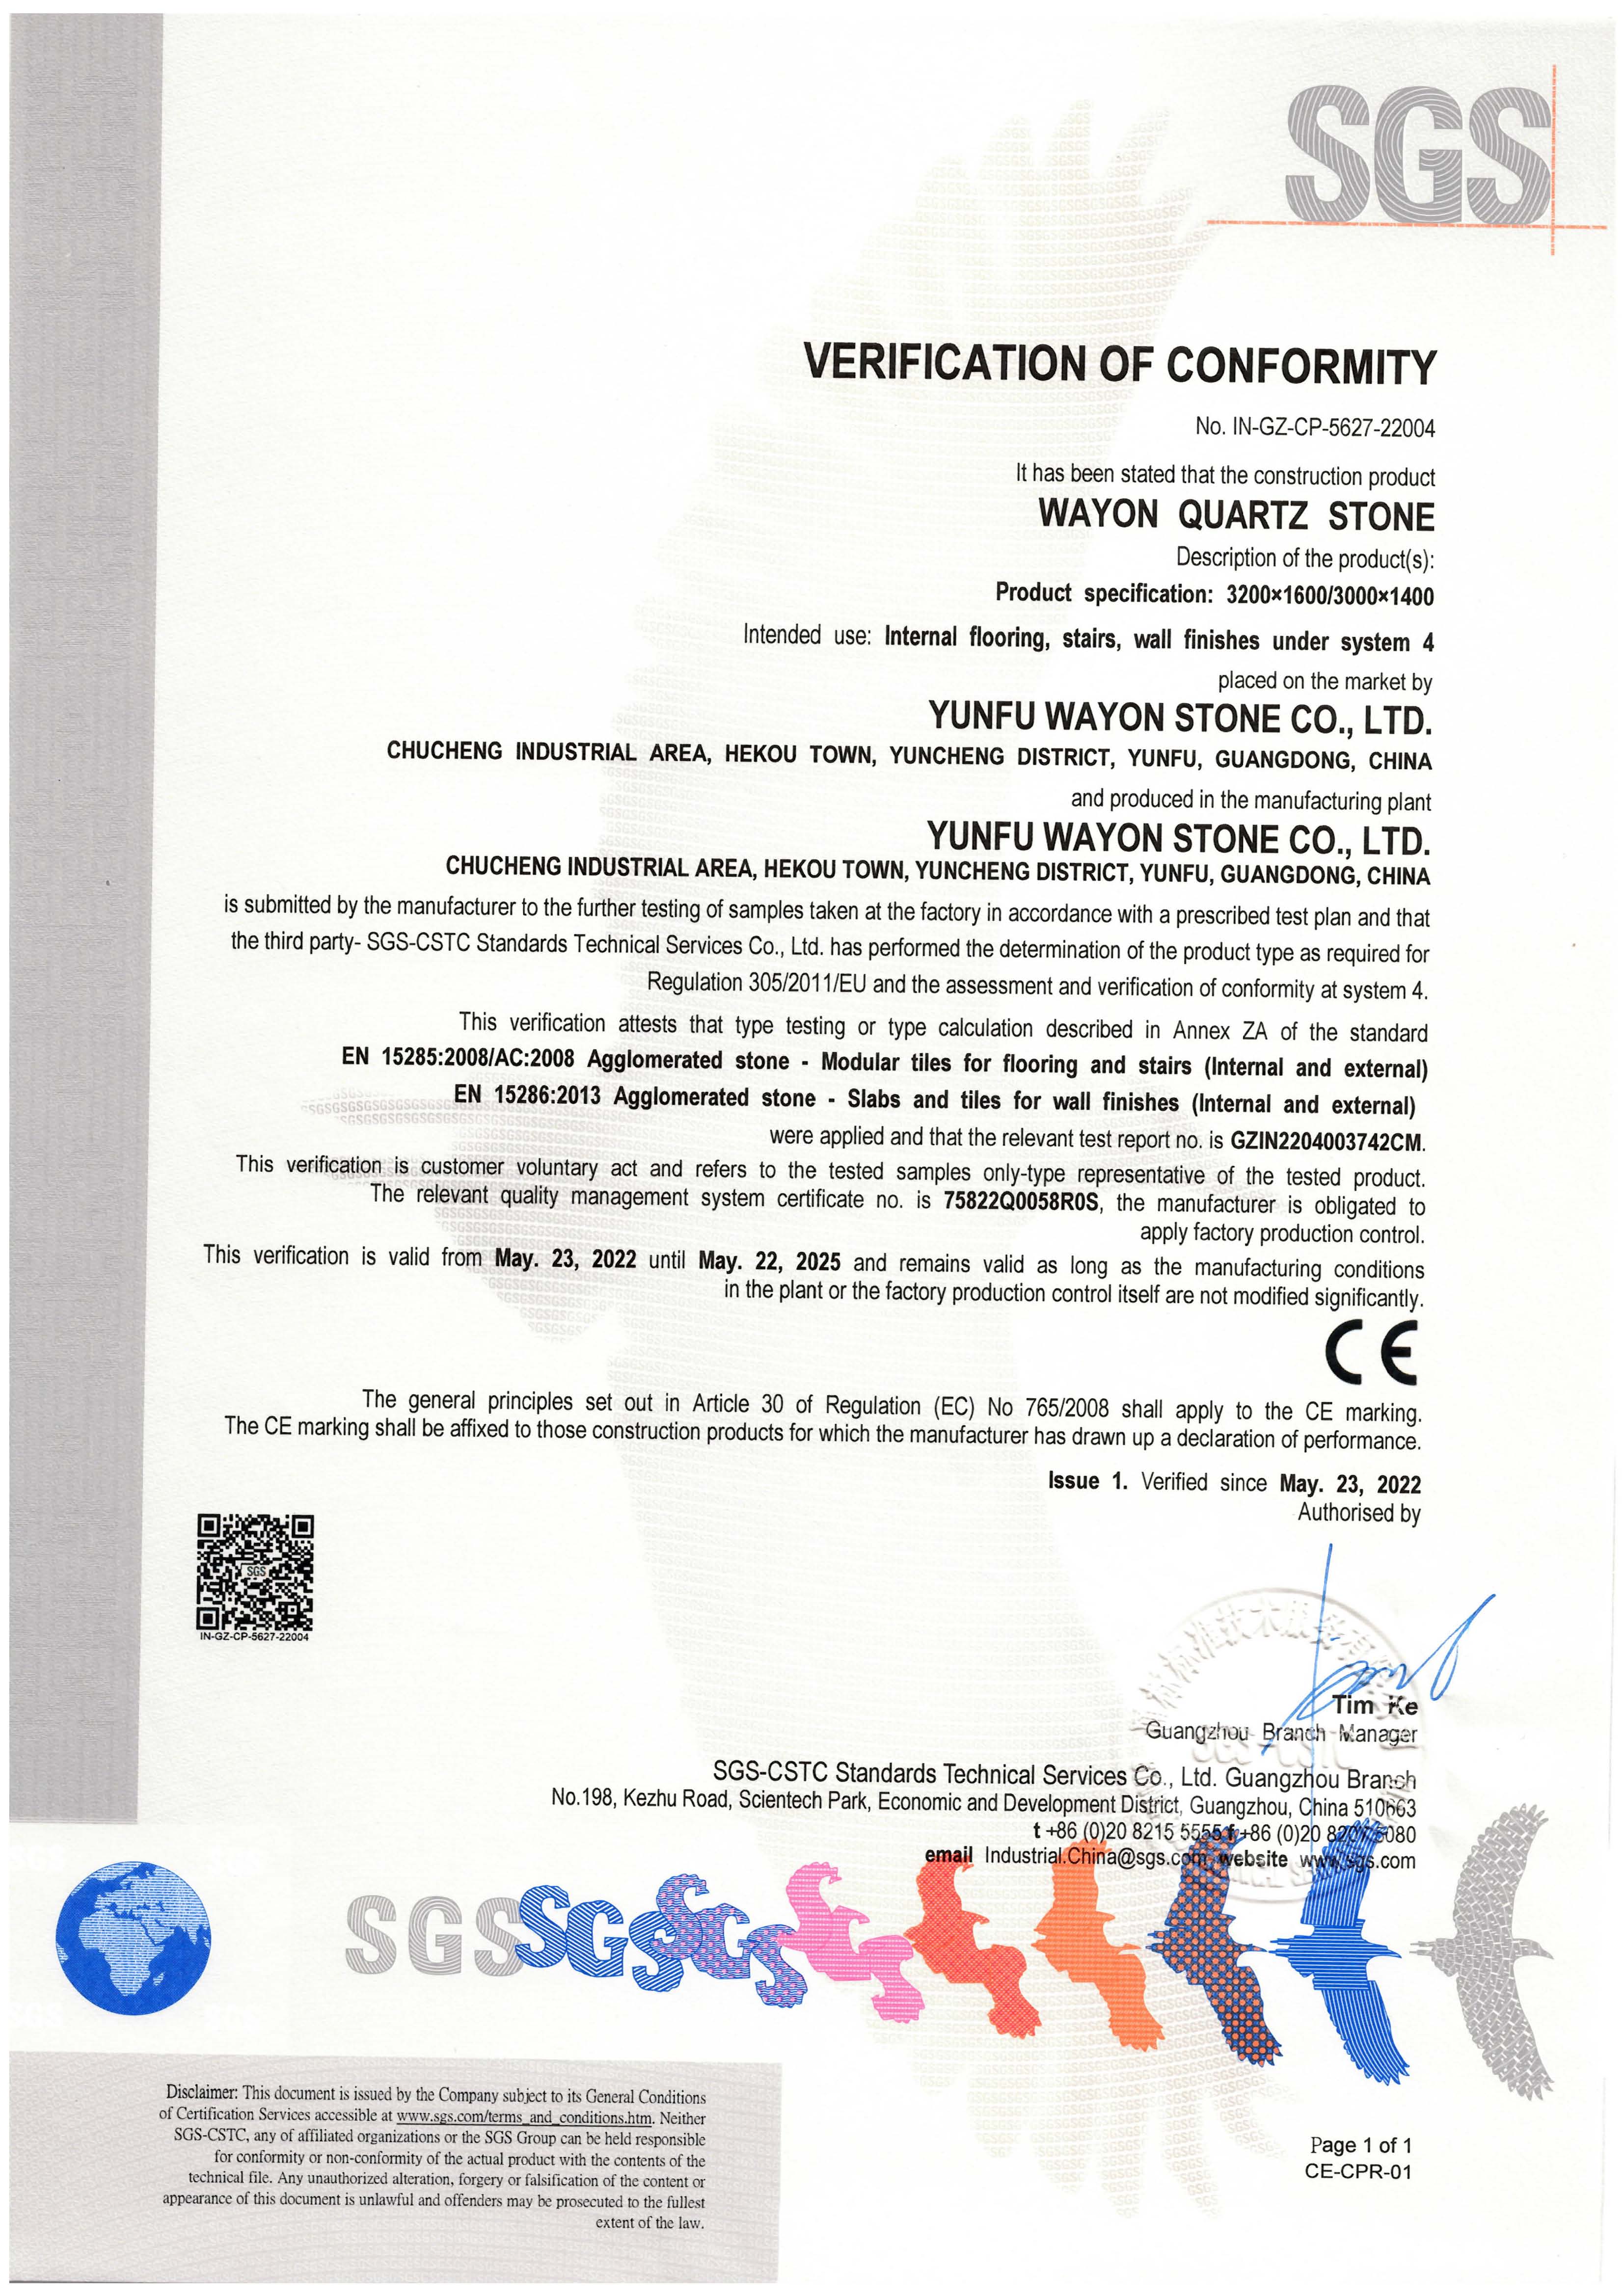 EU CE safety certification